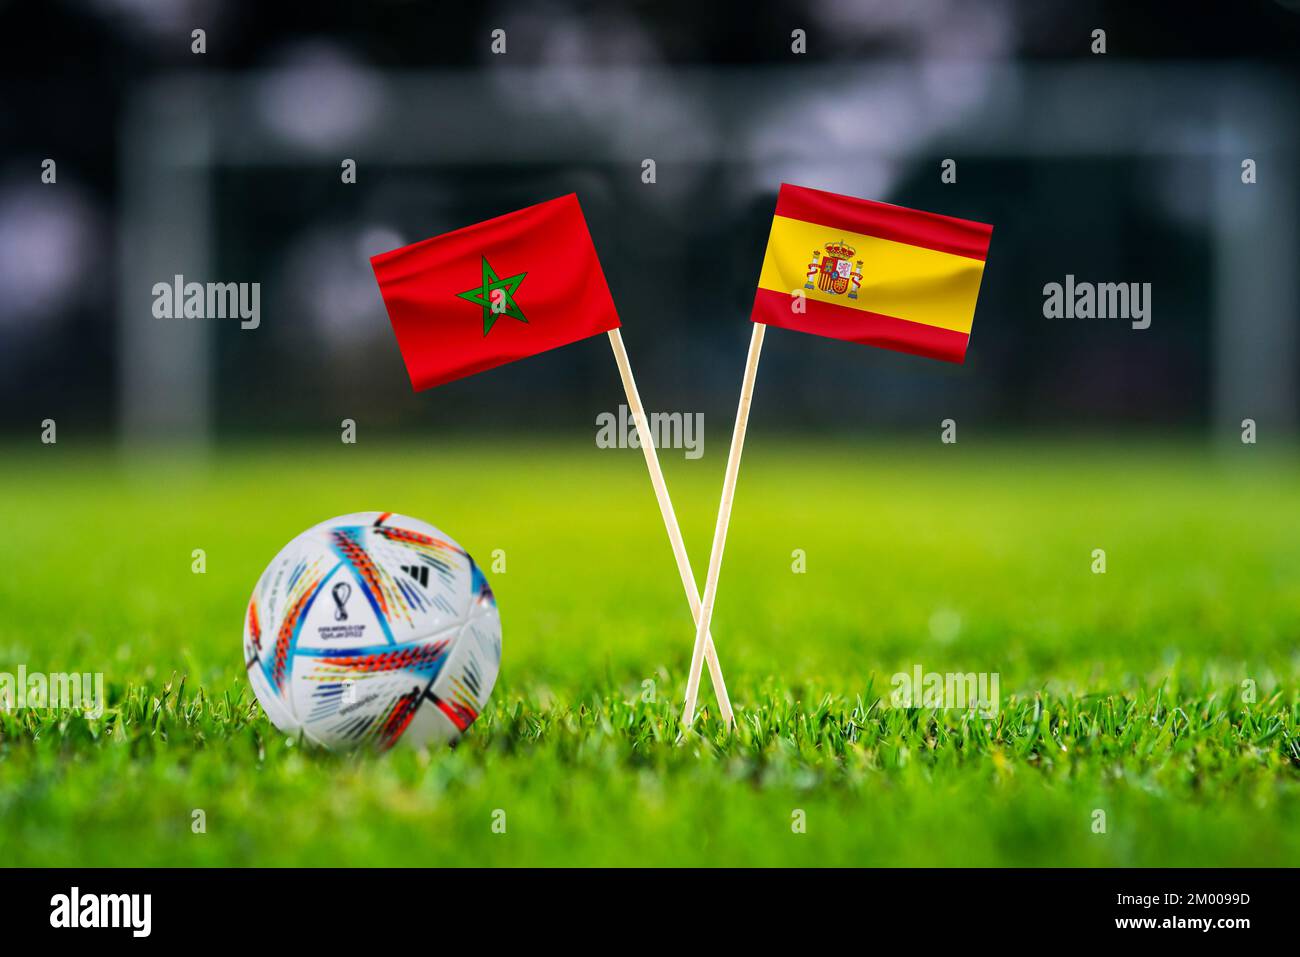 KATAR, DOHA, DEZEMBER 2. 2022: Marokko - Spanien Runde 16 des Fußballspiels. Offizieller Ball der FIFA-Weltmeisterschaft Katar 2022 auf grünem Gras. Fußballstadion i Stockfoto